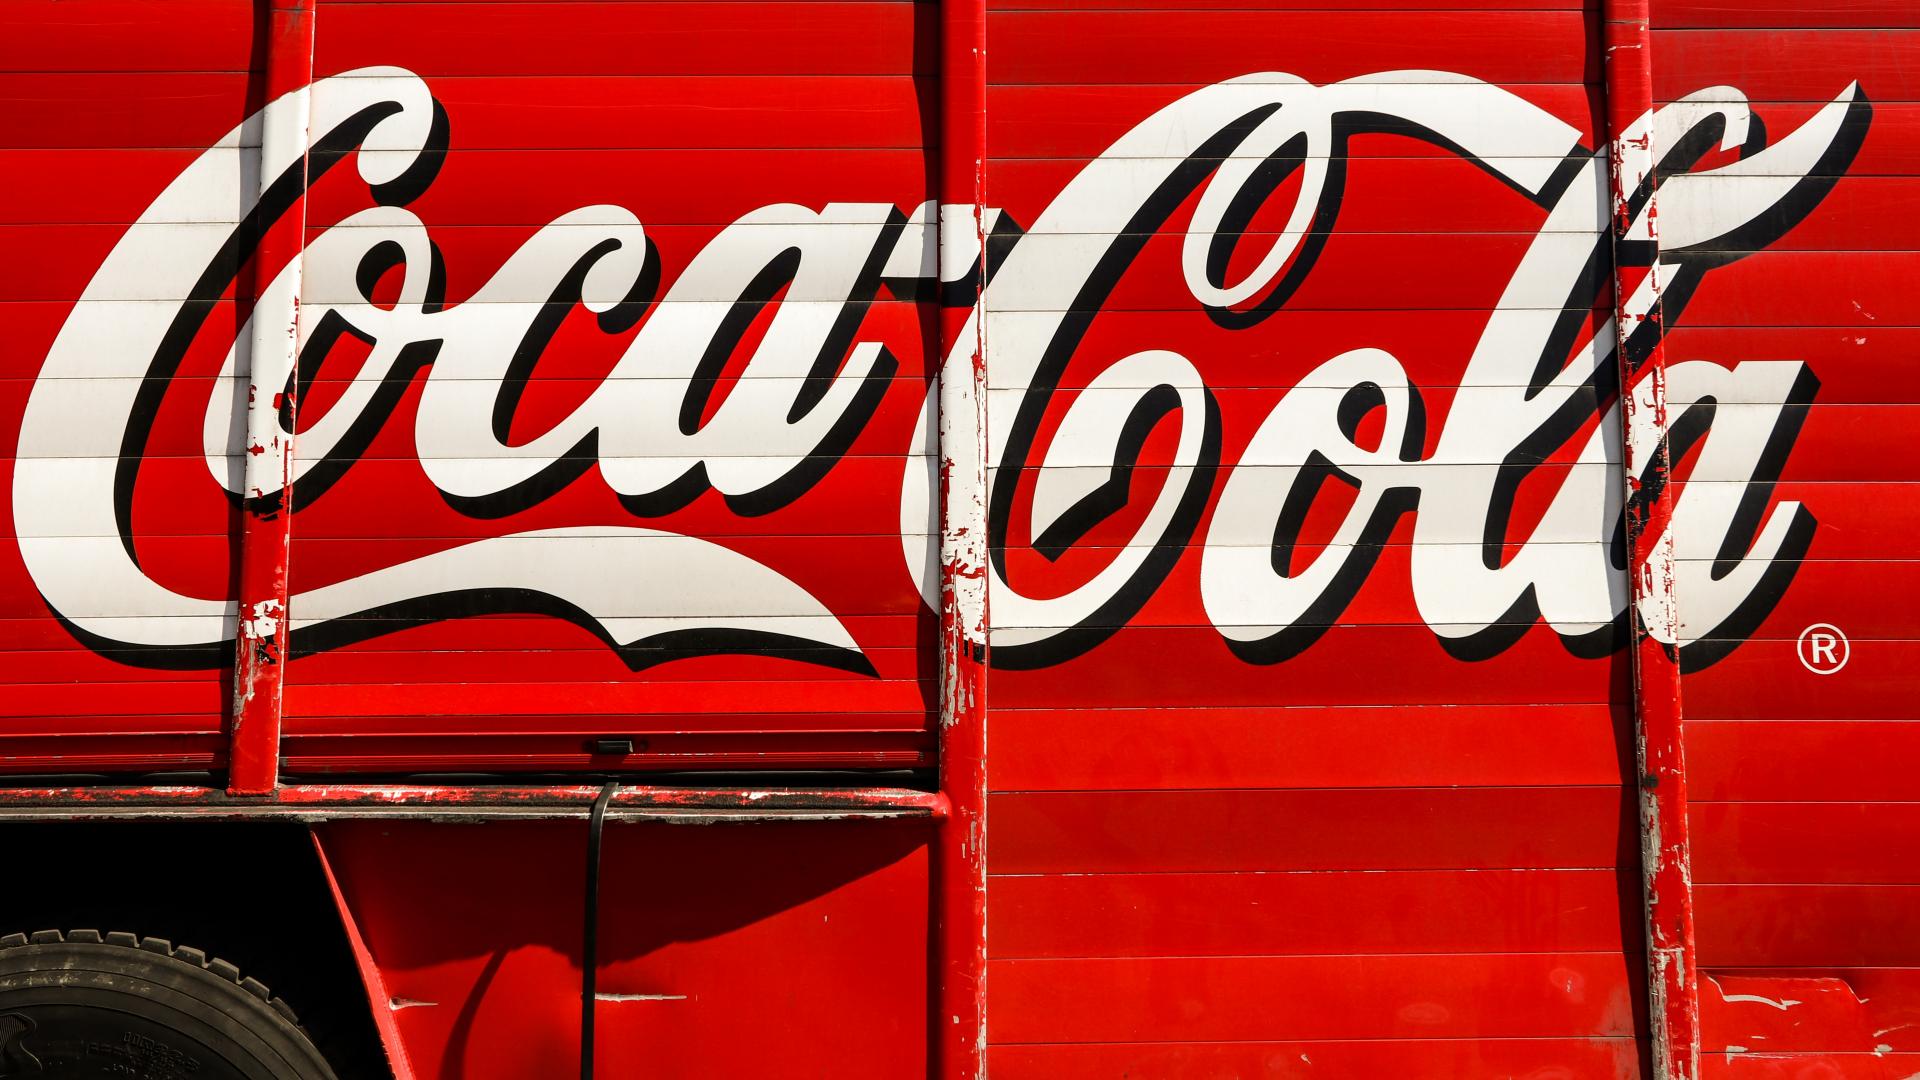 Coca Cola se podría apuntar a la moda de los refrescos cannábicos